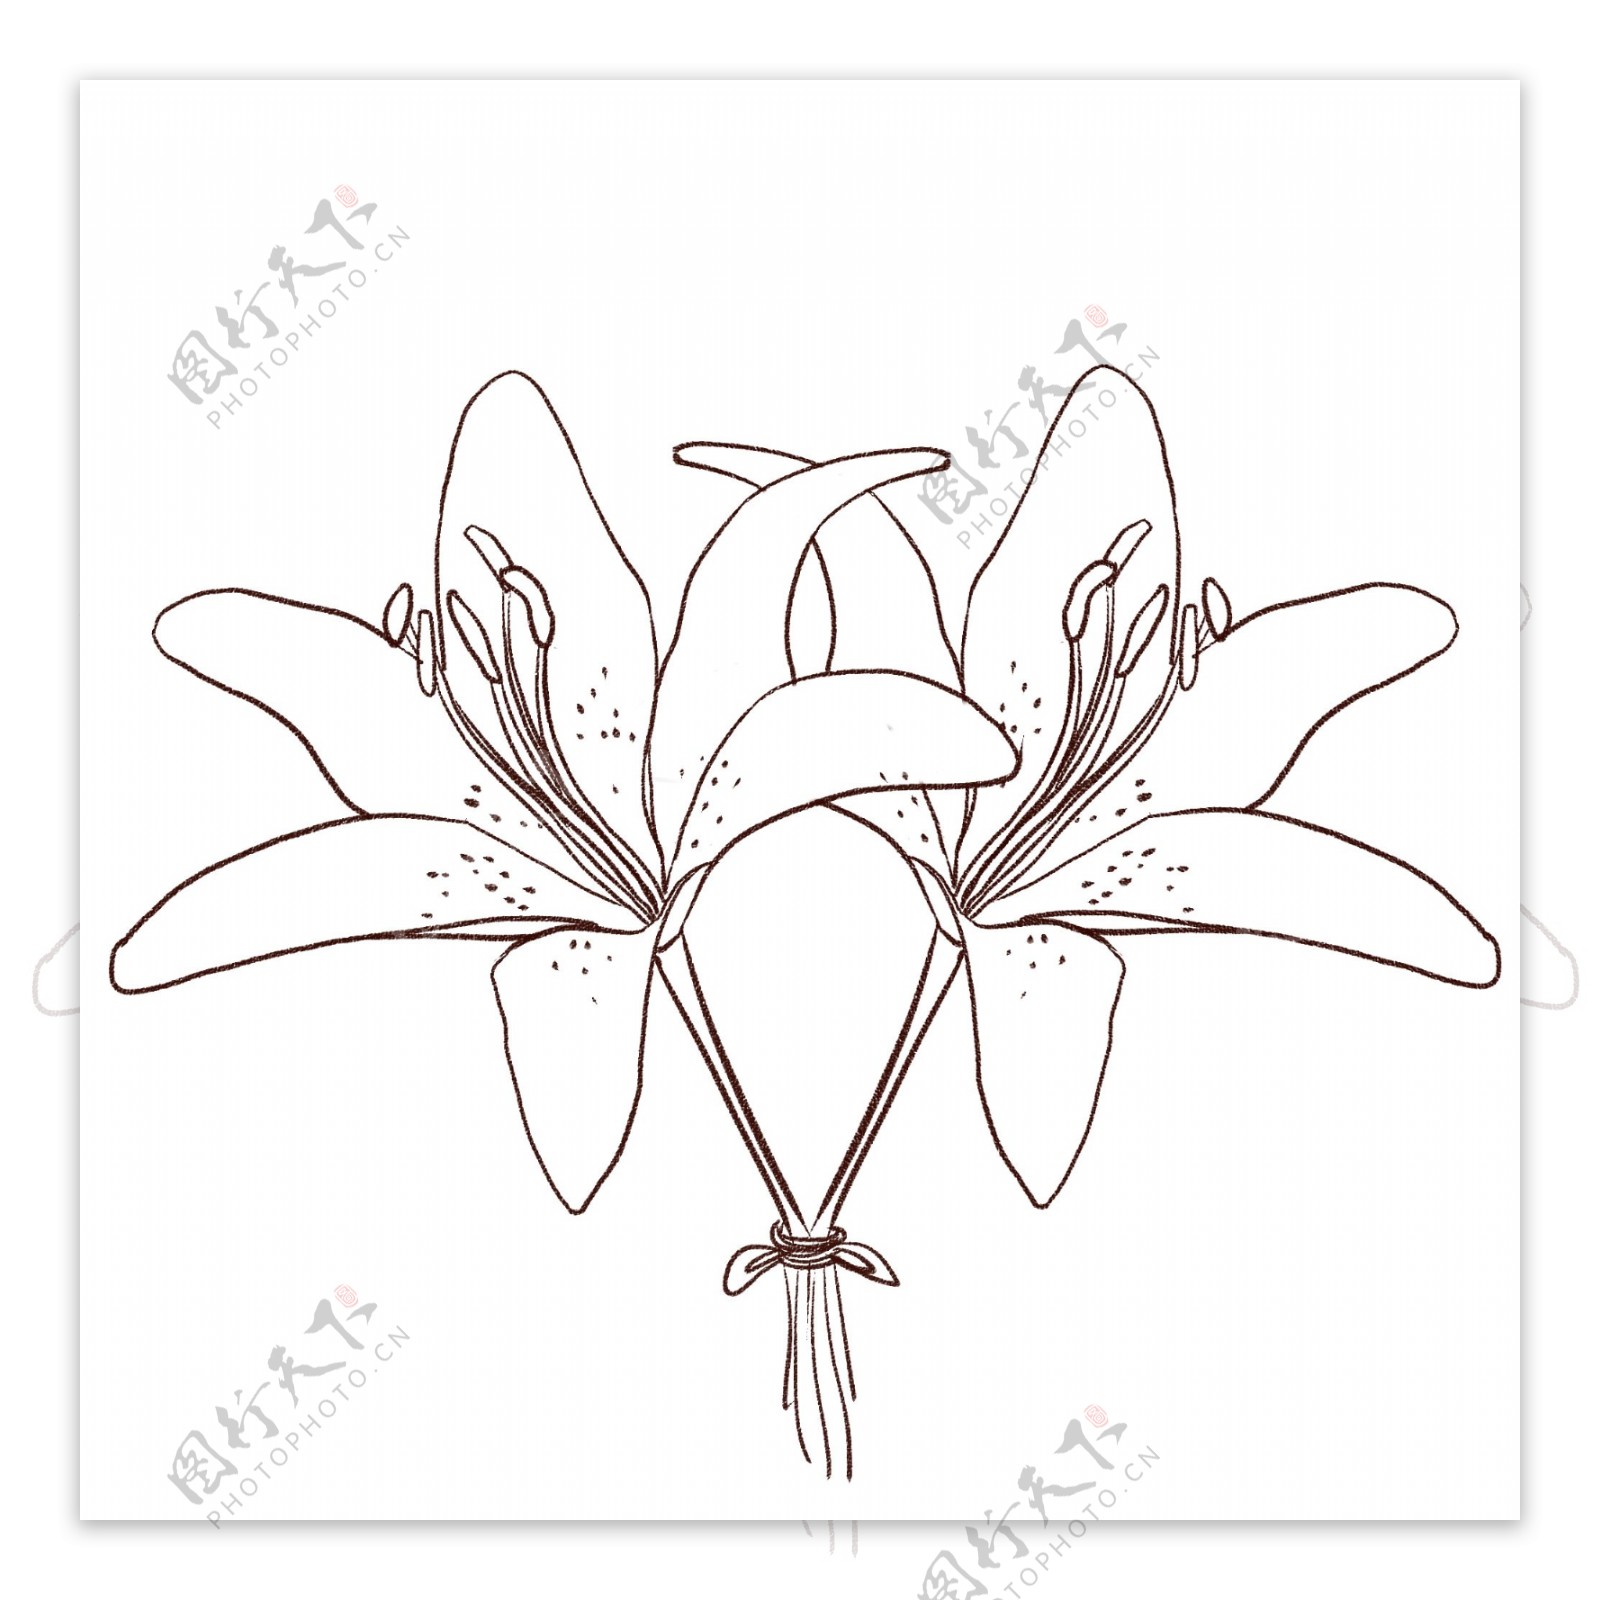 手绘线性两朵的百合花